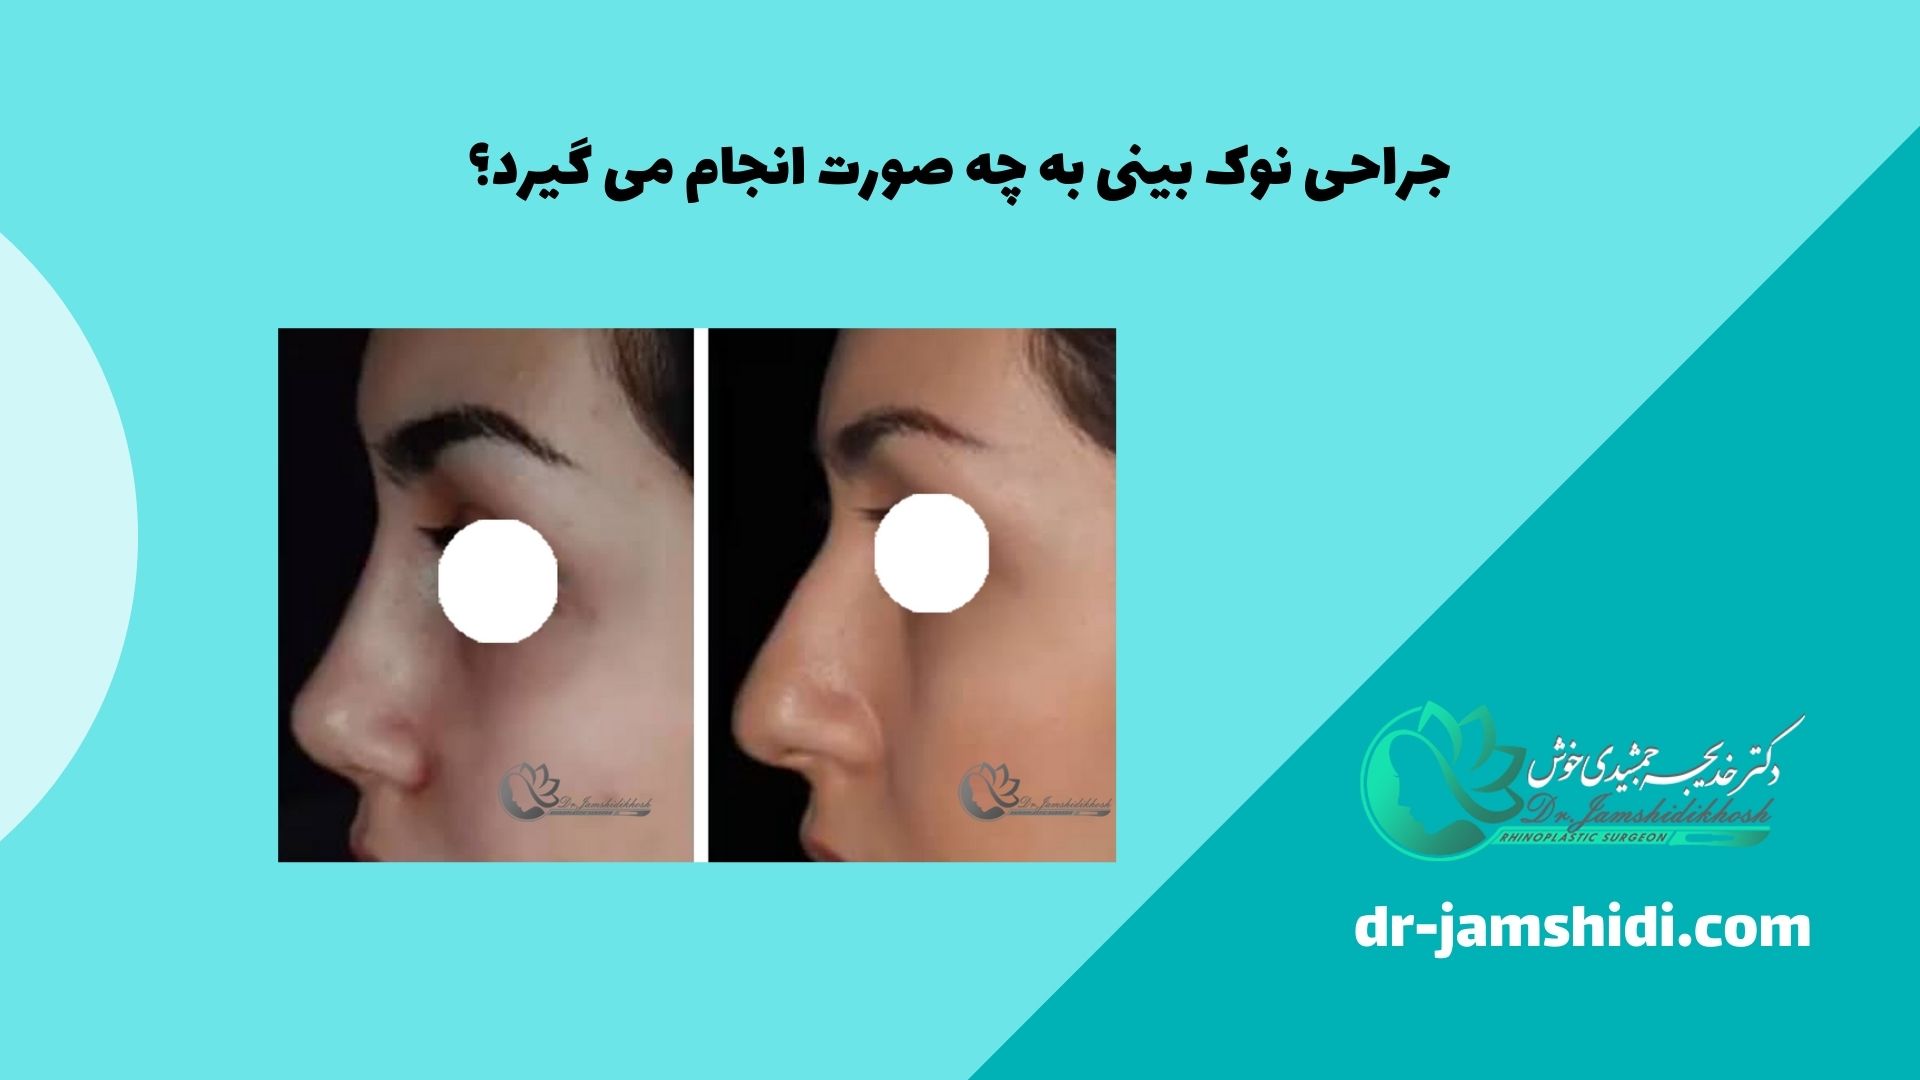 جراحی نوک بینی به چه صورت انجام می گیرد؟